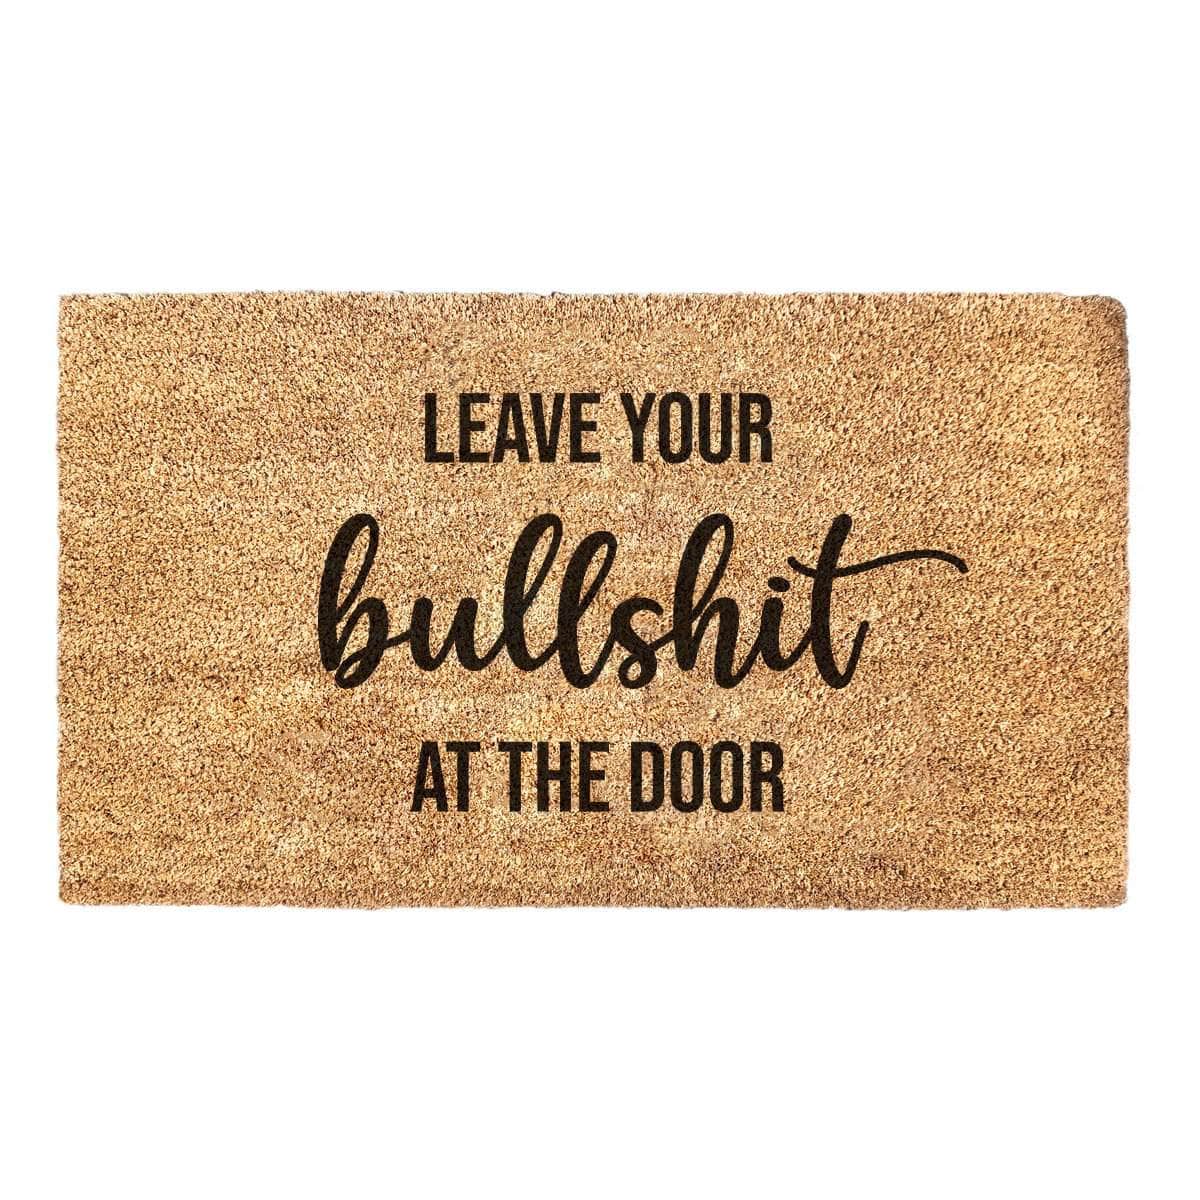 Leave Your Bullshit At The Door - Doormat